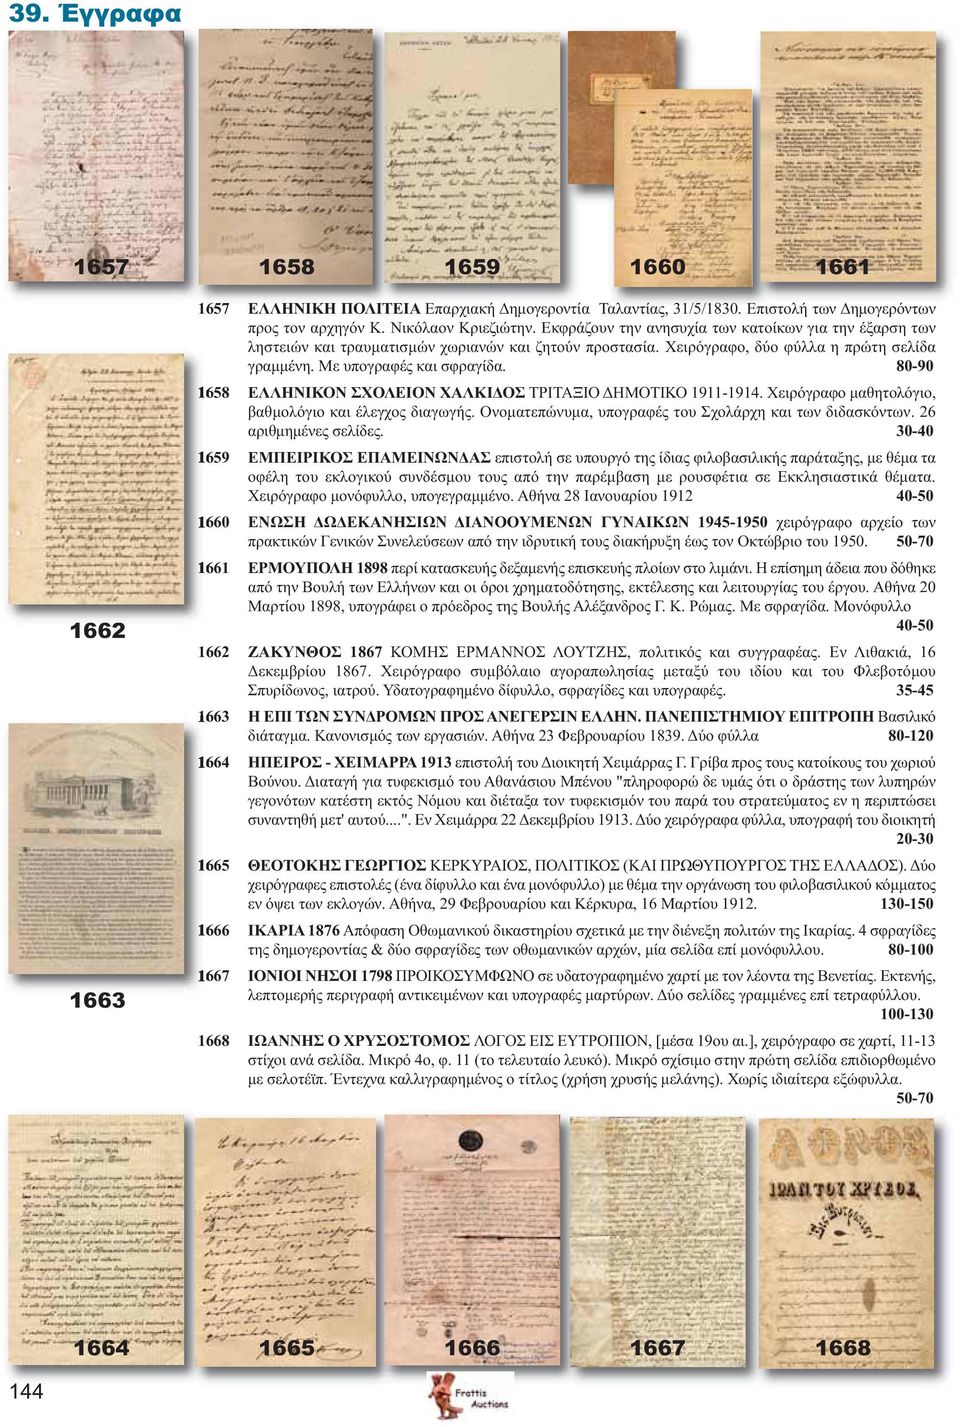 80-90 1658 ΕΛΛΗΝΙΚΟΝ ΣΧΟΛΕΙΟΝ ΧΑΛΚΙΔΟΣ ΤΡΙΤΑΞΙΟ ΔΗΜΟΤΙΚΟ 1911-1914. Χειρόγραφο μαθητολόγιο, βαθμολόγιο και έλεγχος διαγωγής. Ονοματεπώνυμα, υπογραφές του Σχολάρχη και των διδασκόντων.